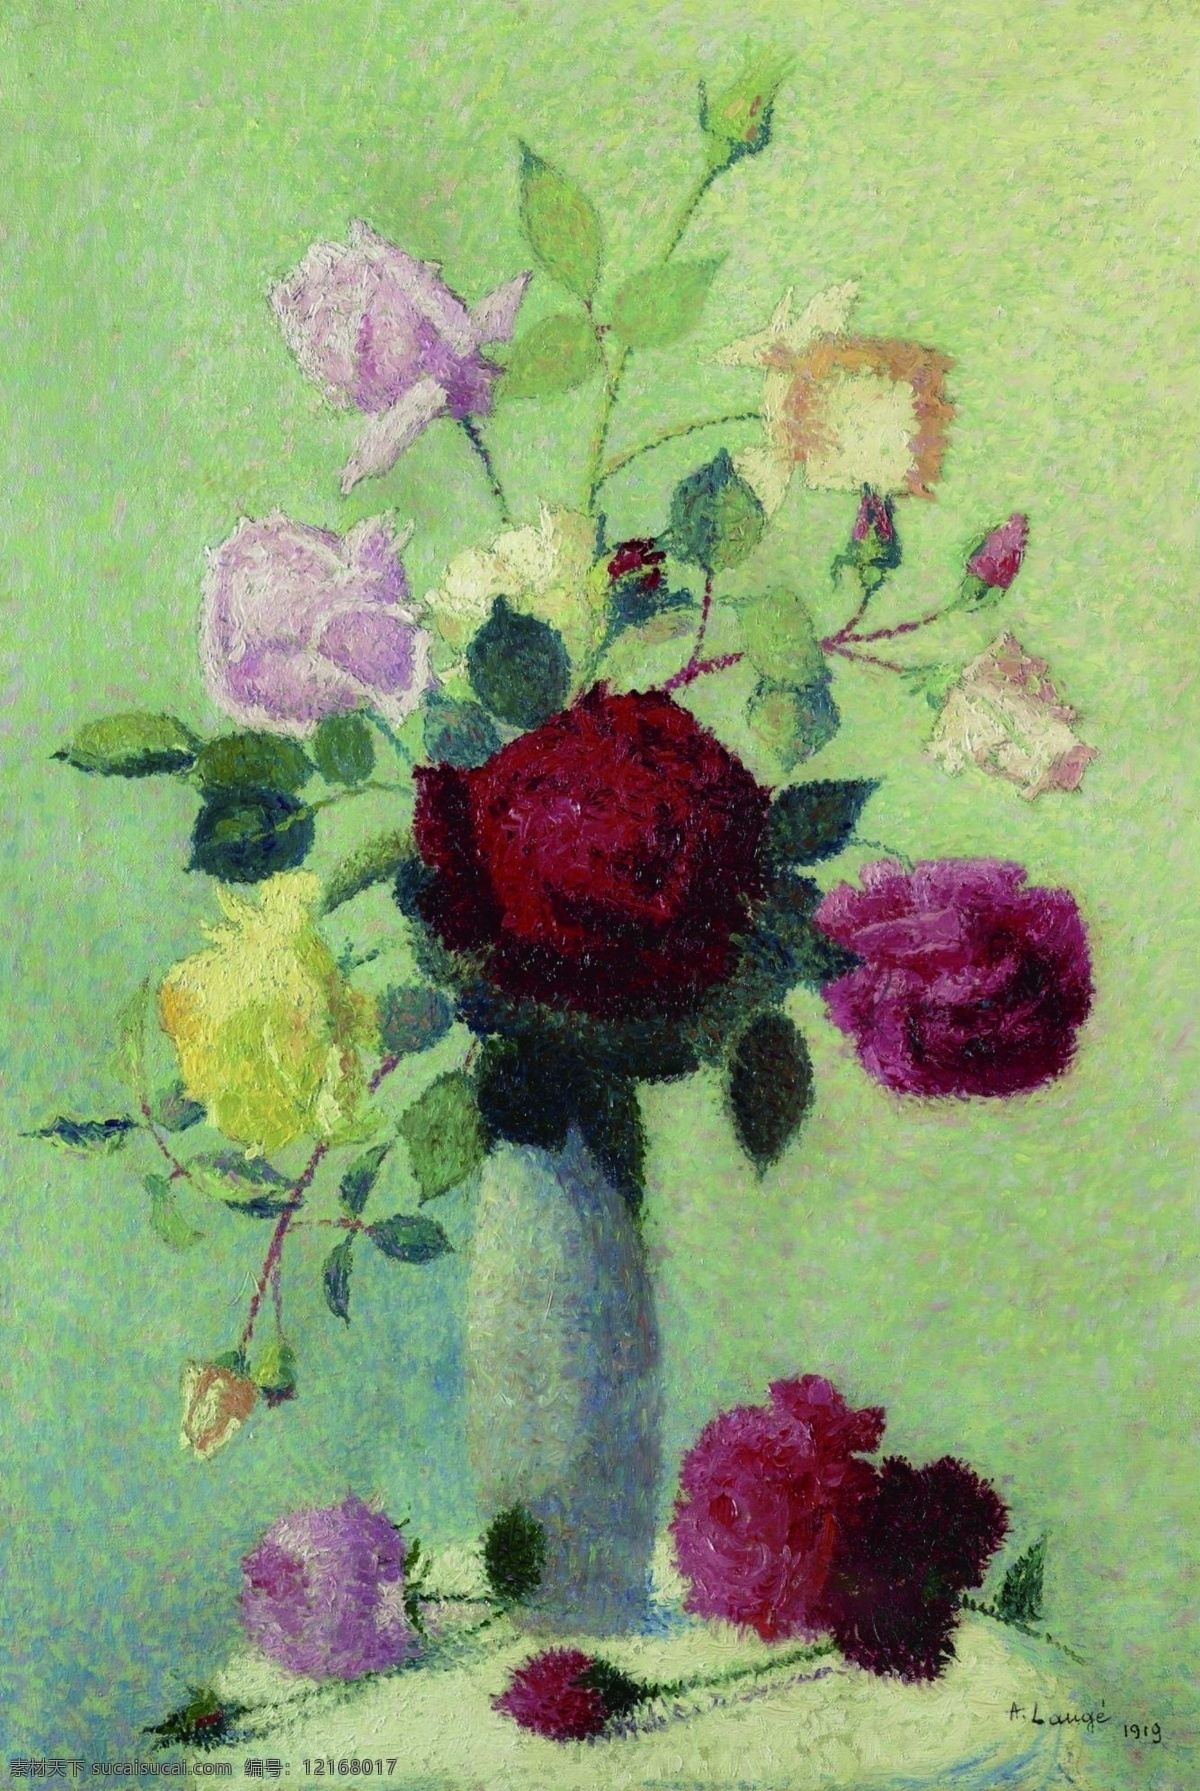 1919 花卉 水果 蔬菜 器皿 静物 印象 画派 写实主义 油画 装饰画 roses with vase lauge achille 荷花 玫瑰 百合 鲜花 实物 装饰素材